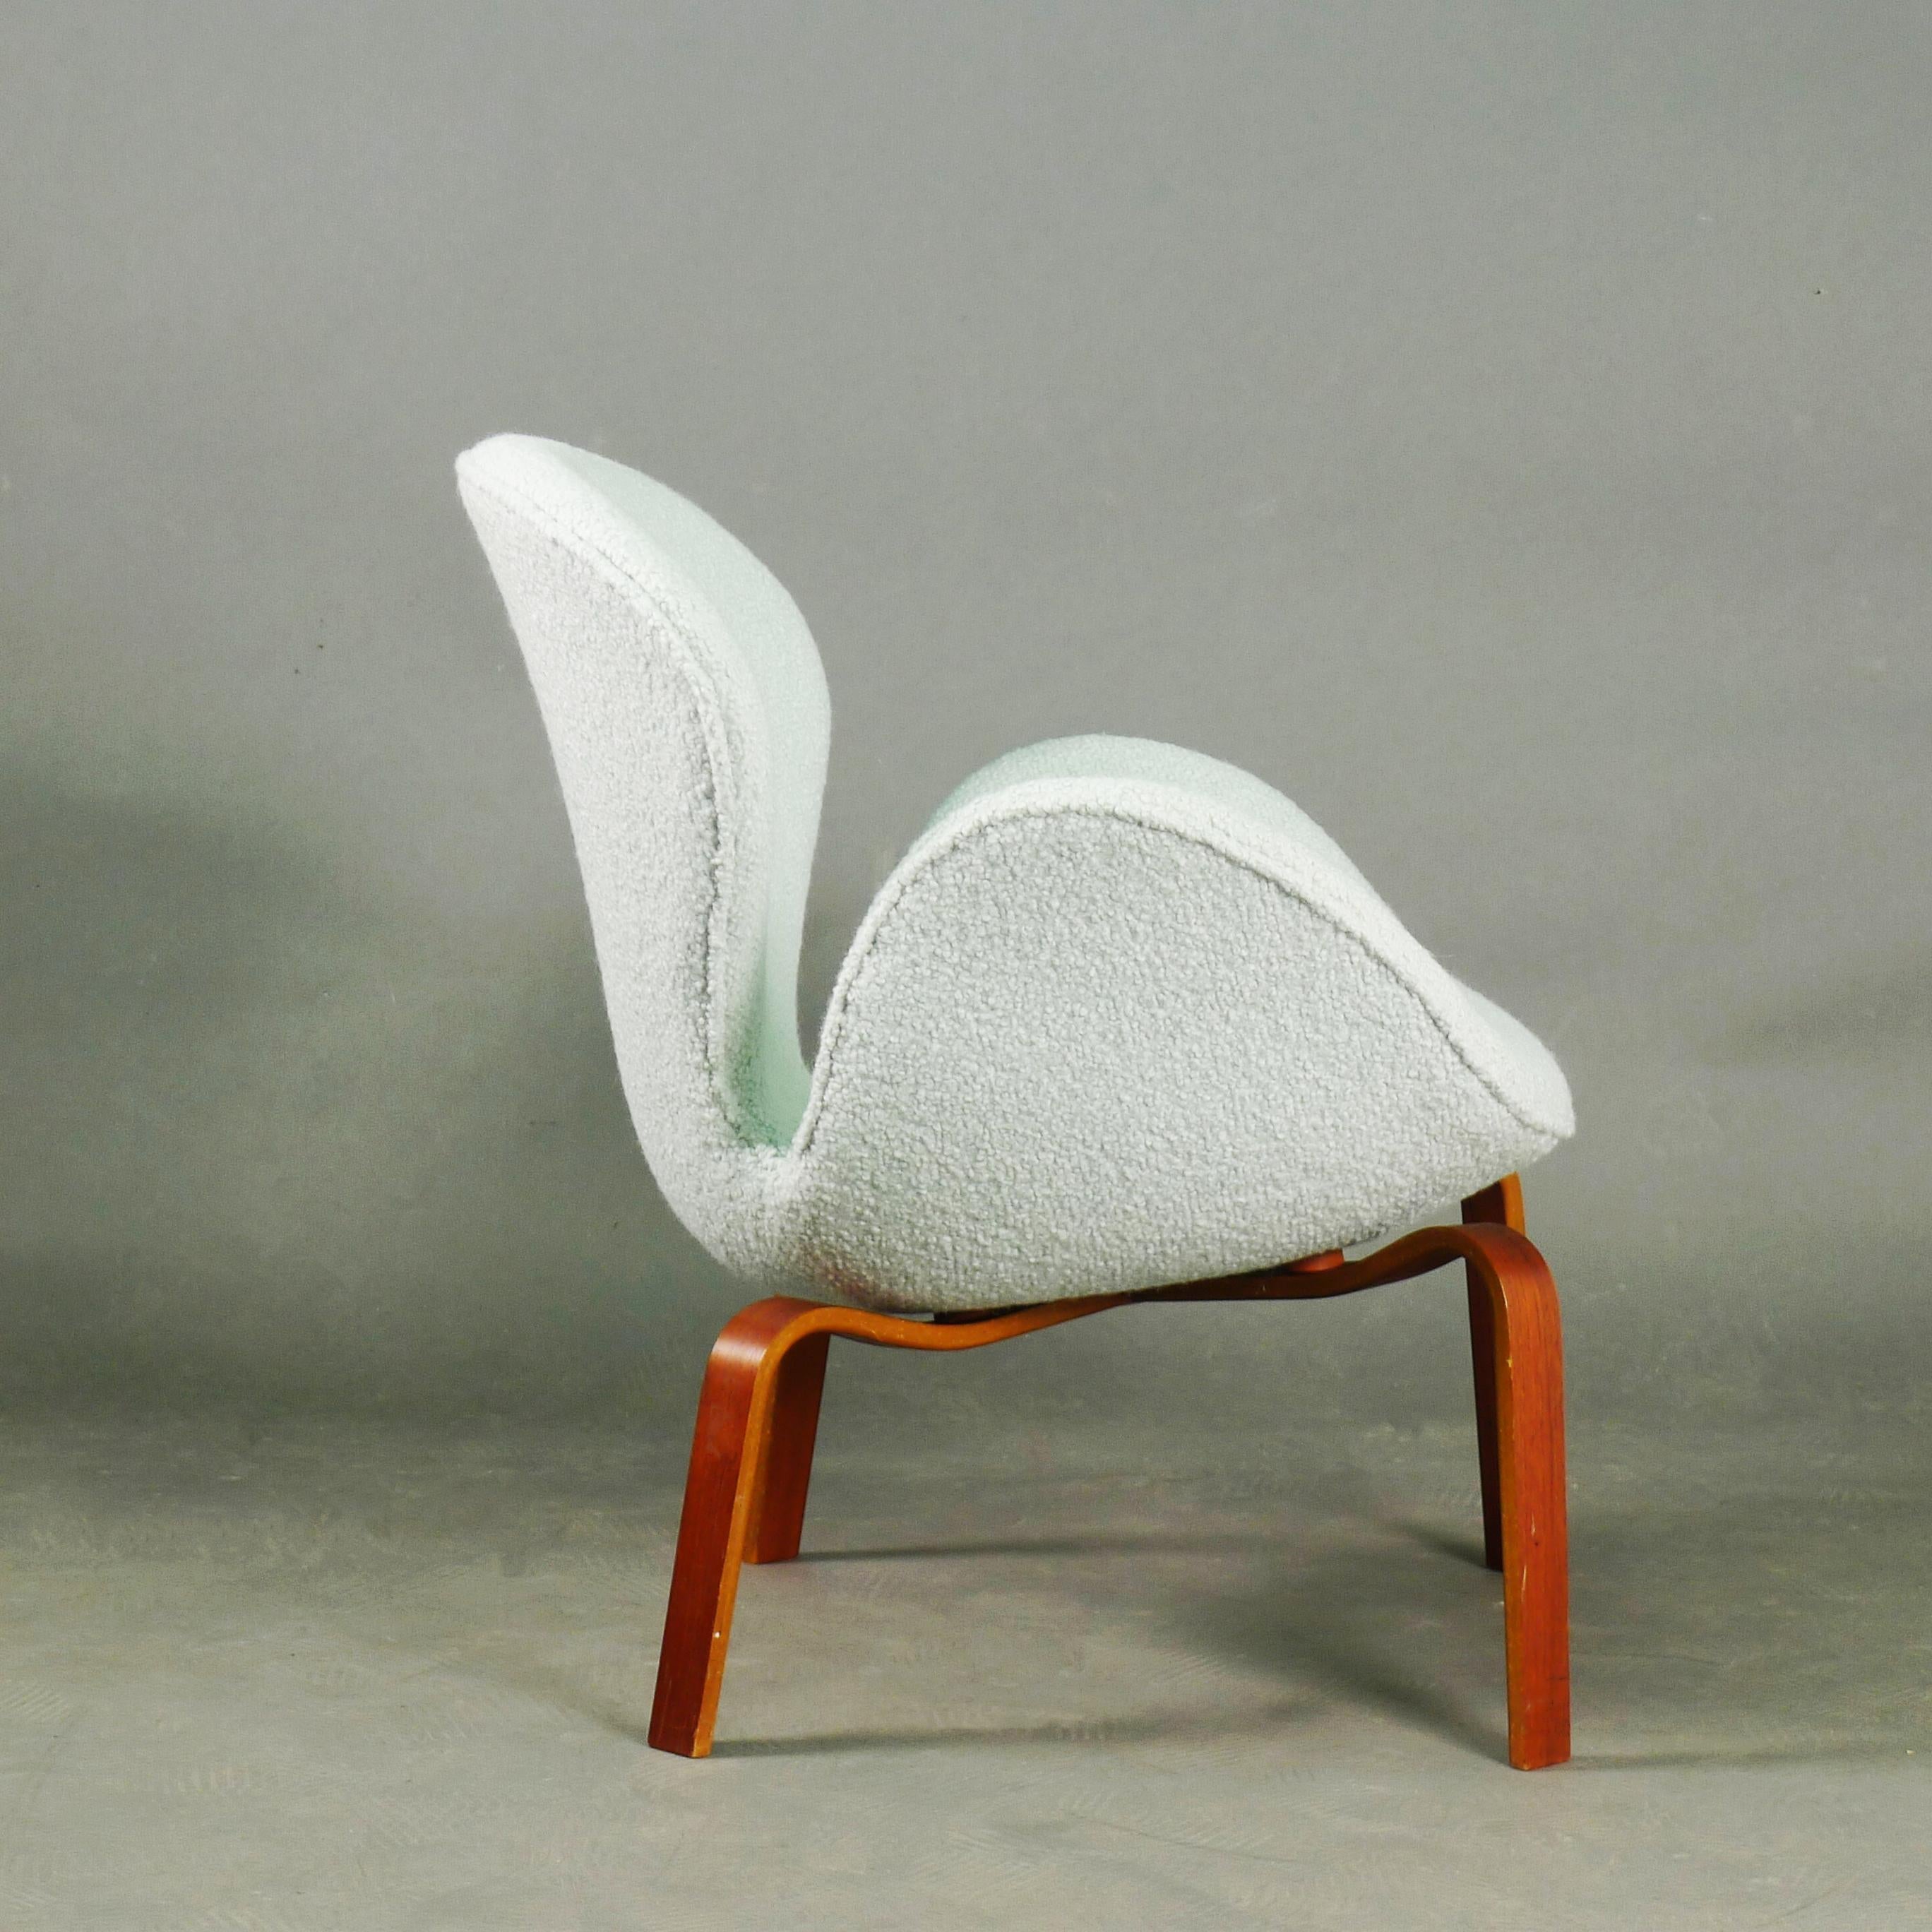 Rare chaise Swan originale conçue par Arne Jacobsen et fabriquée par Fritz Hansen à Copenhague, Danemark.  

Pendant une période limitée dans les années 1960, un petit nombre de chaises Swan ont été produites avec des pieds en bois, plutôt qu'avec